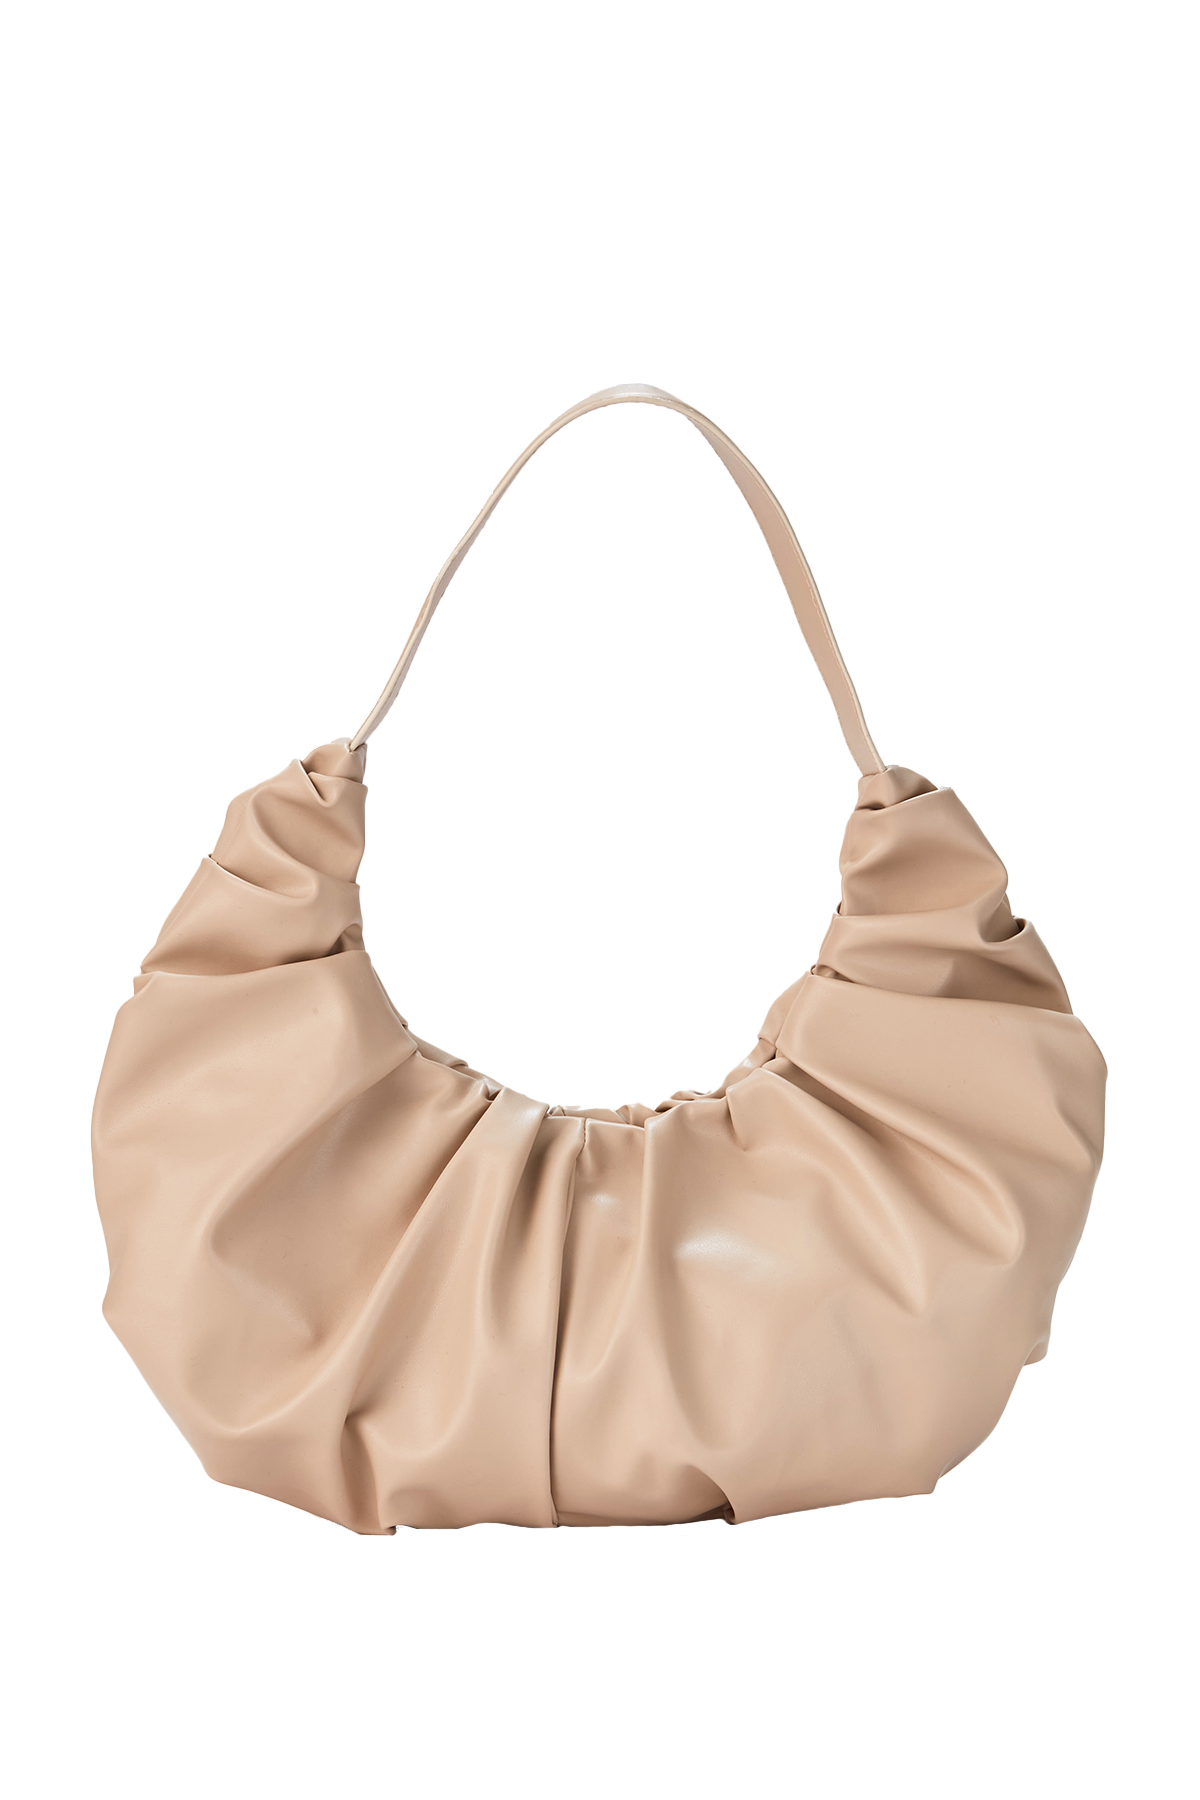 Vegan Leather Shoulder Bag - Nude